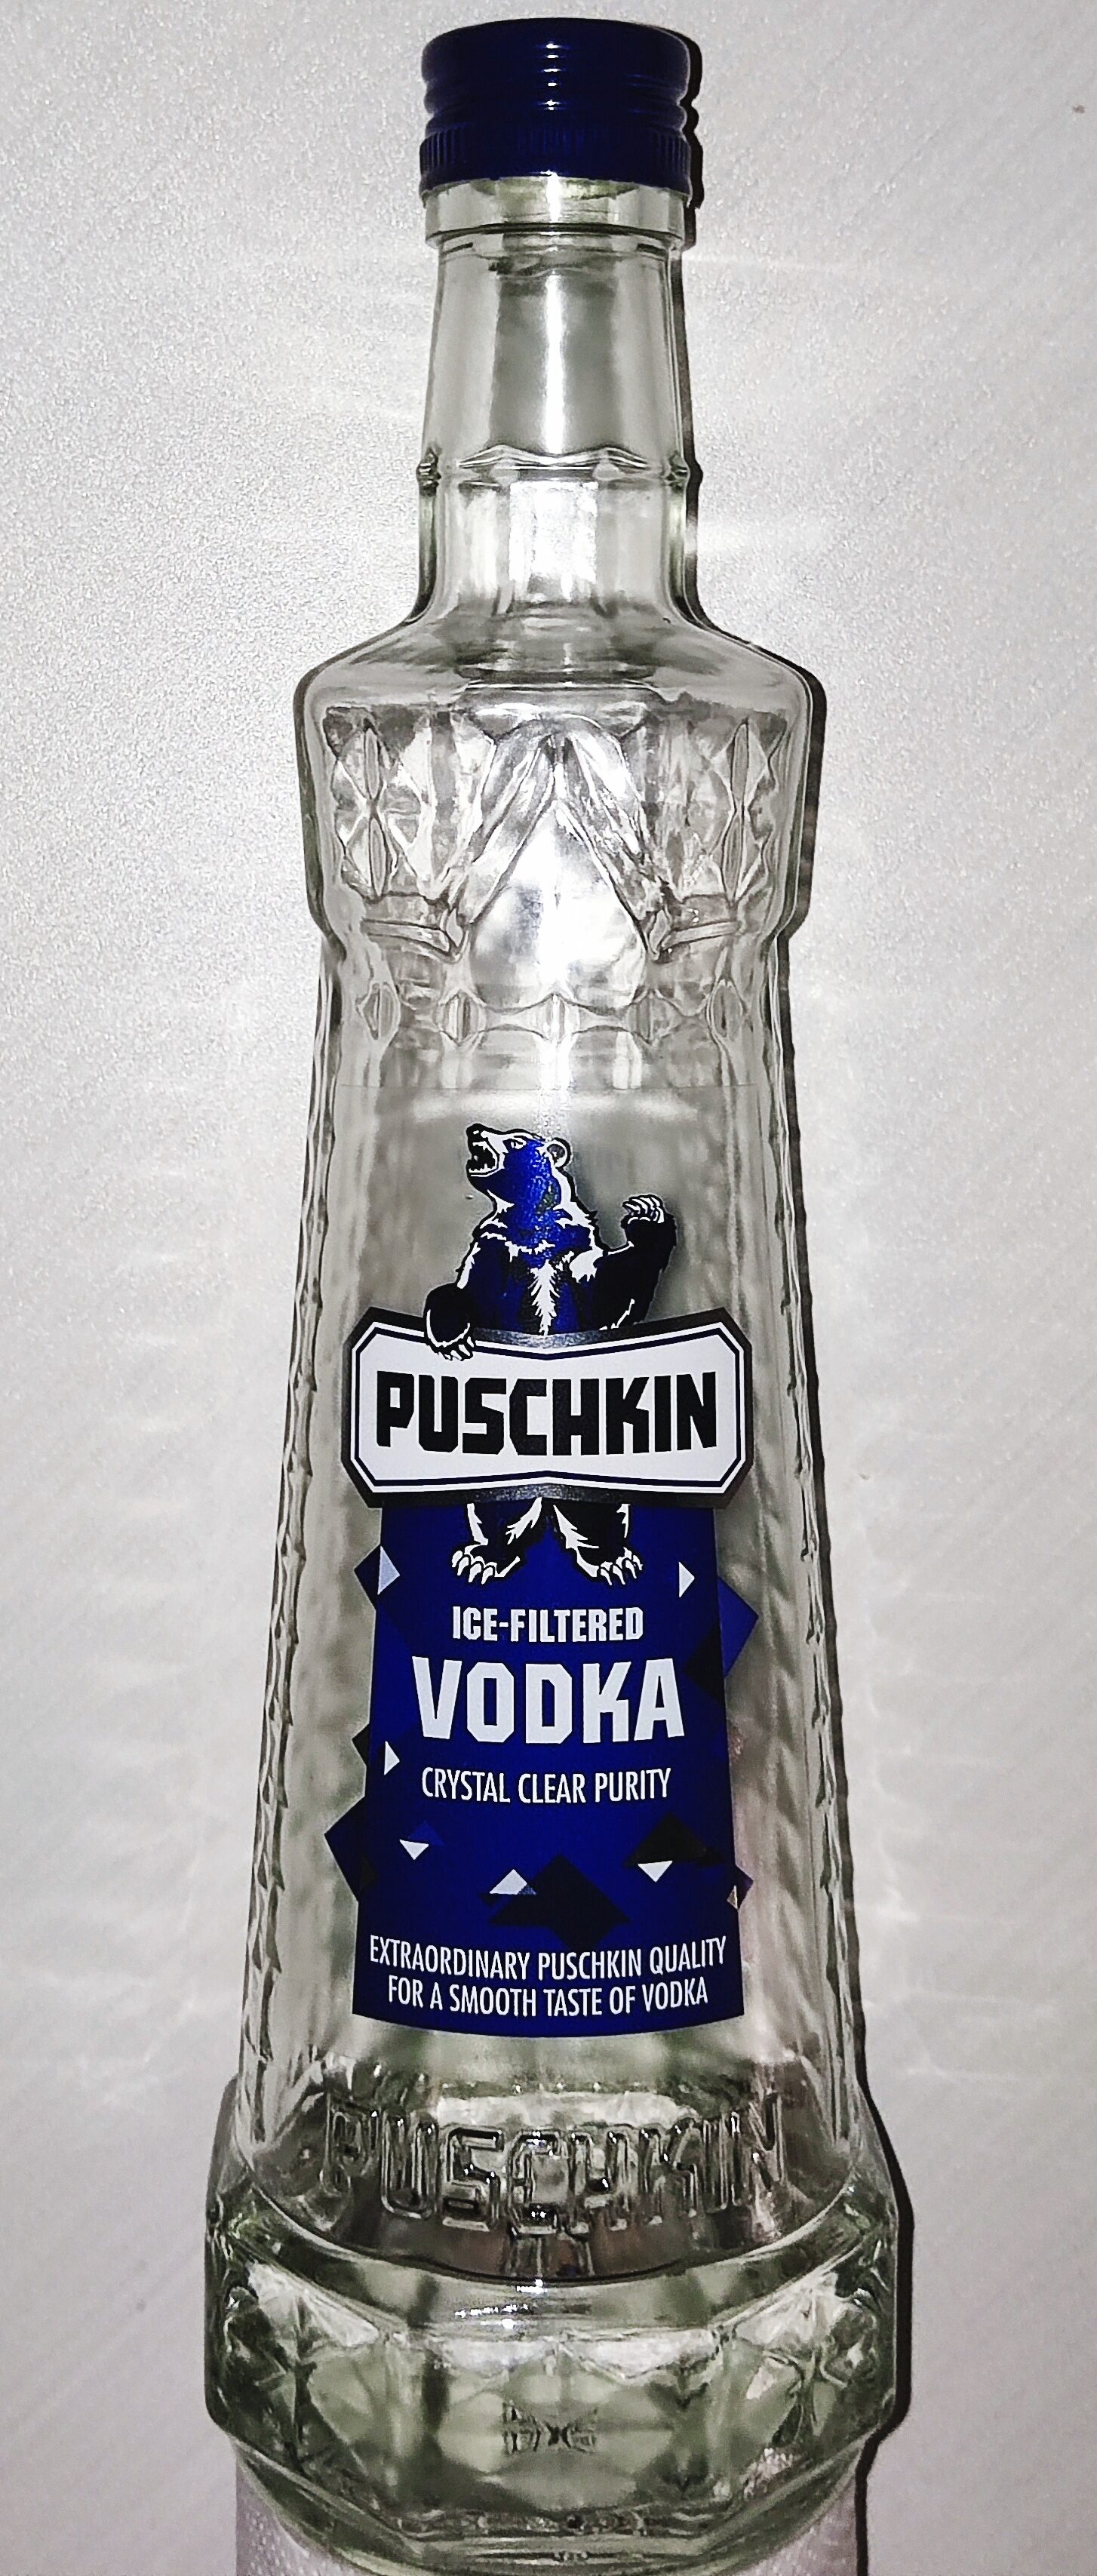 0,7 37,5% L - Vodka vol - Puschkin